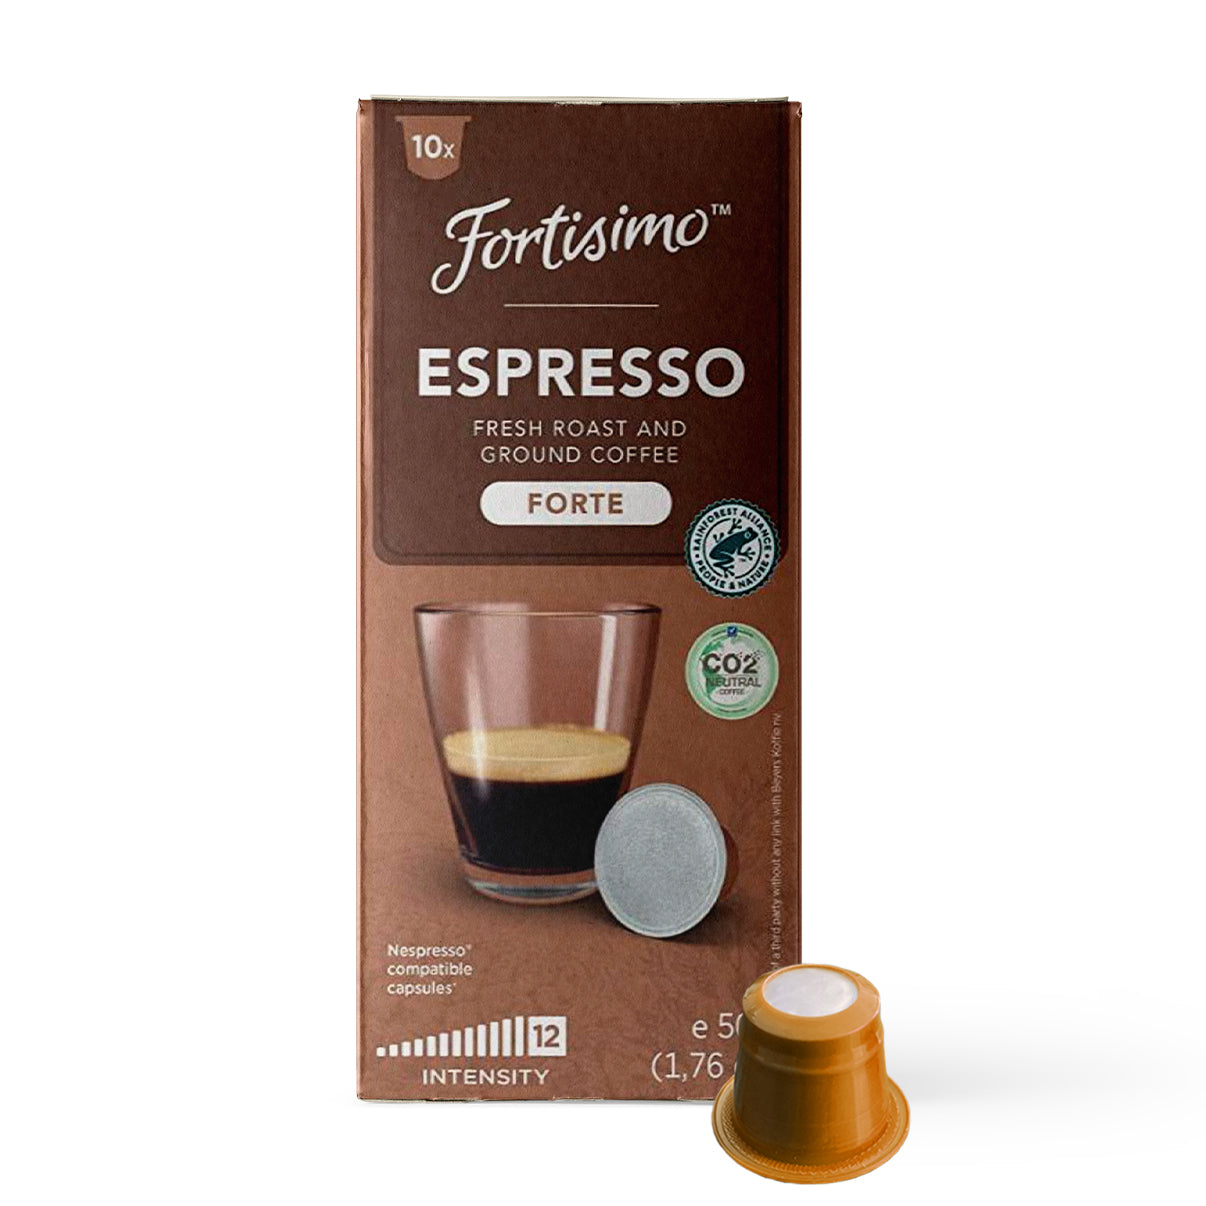 FORTISIMO Espresso Compatible Pods - 200 Ct FORTE - Coffee capsules compatible with Nespresso Original Line